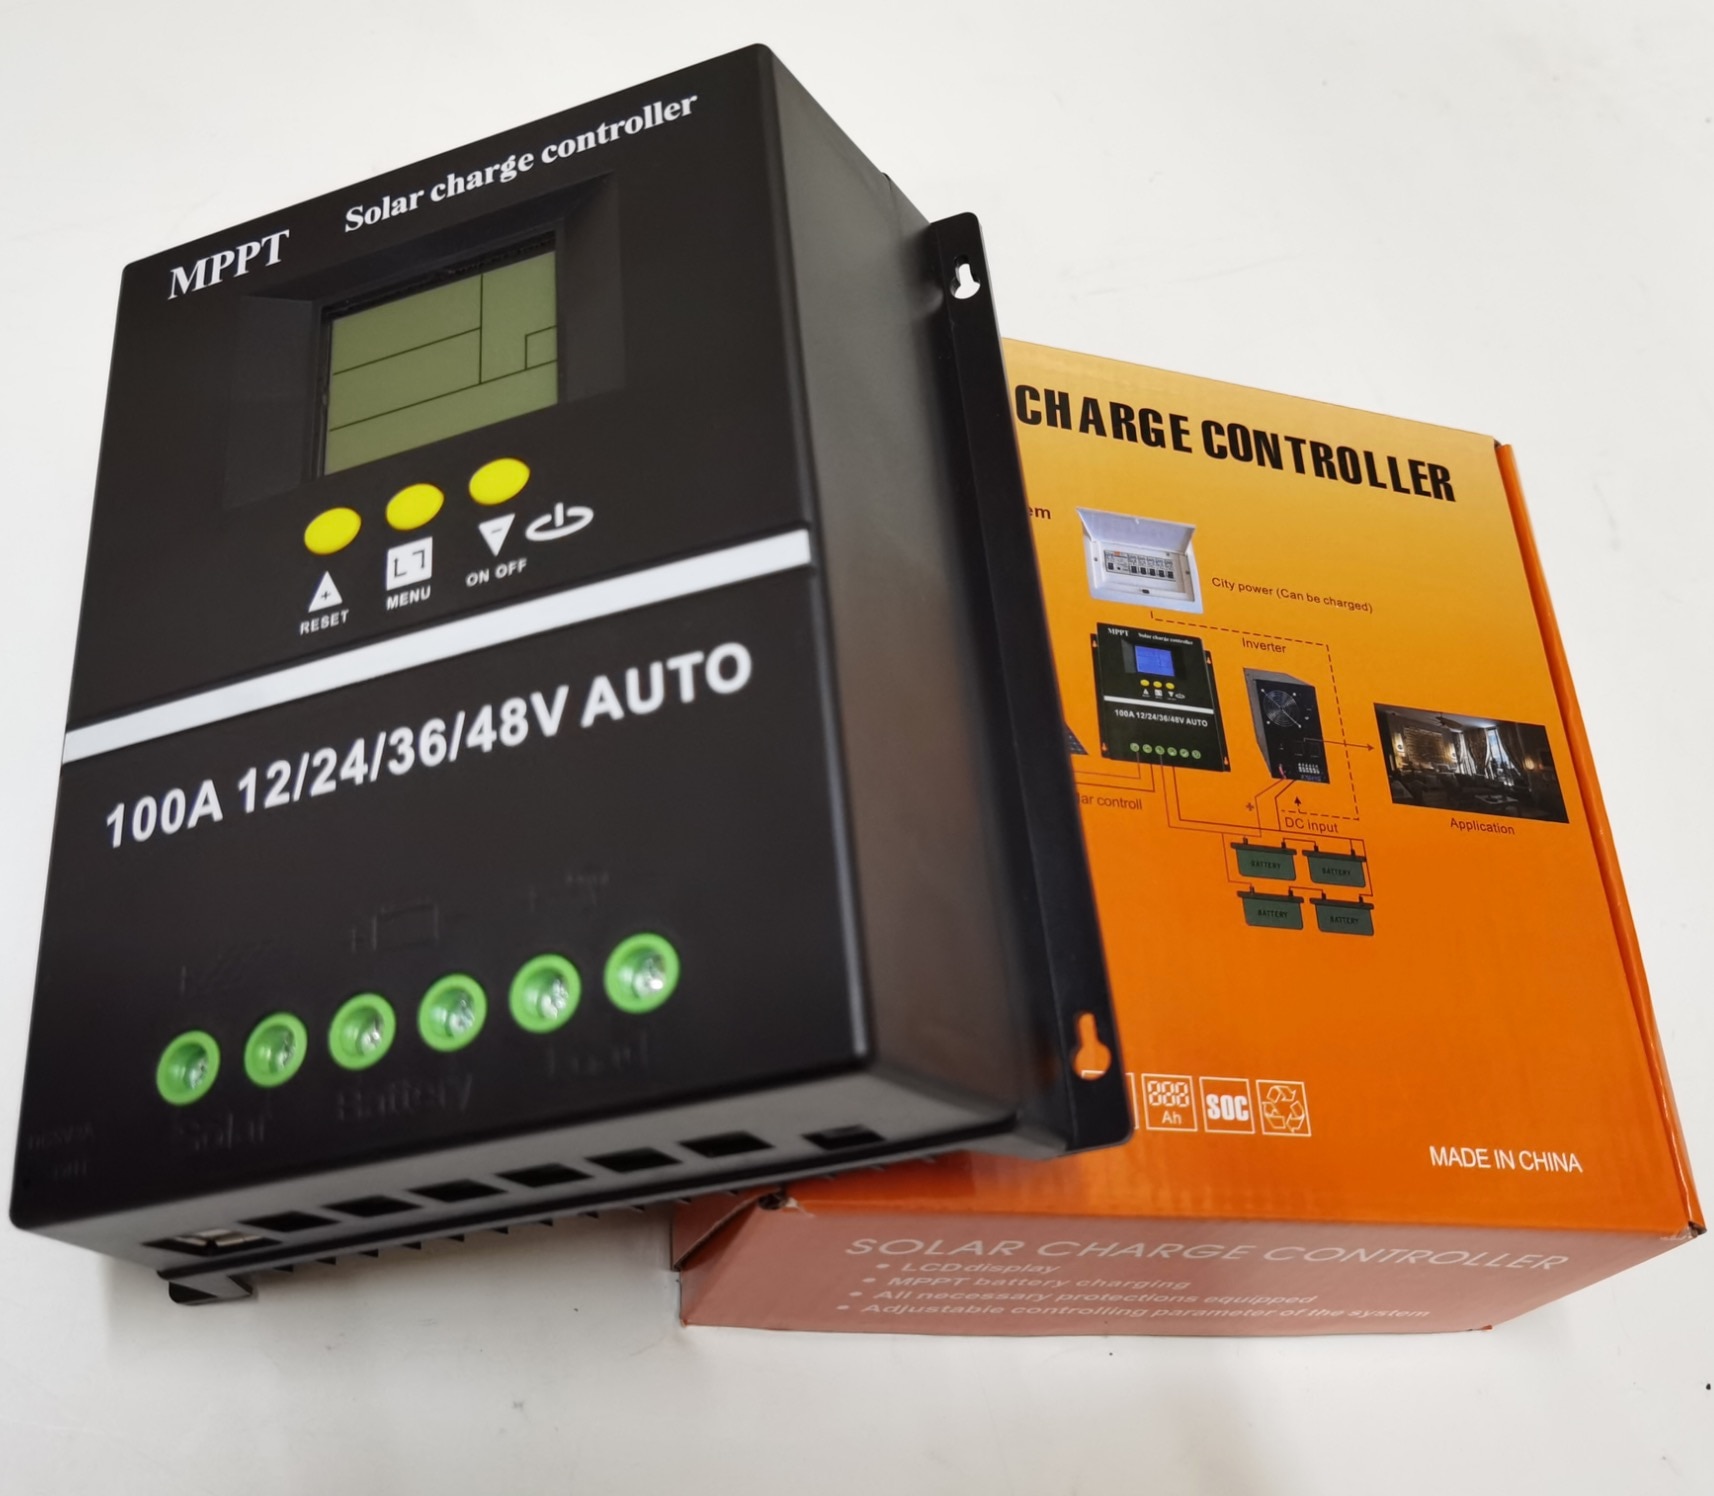 60A MPPT Solar Charge Controller DC12V/24V/36V/48 Auto Battery Charger Regulator 